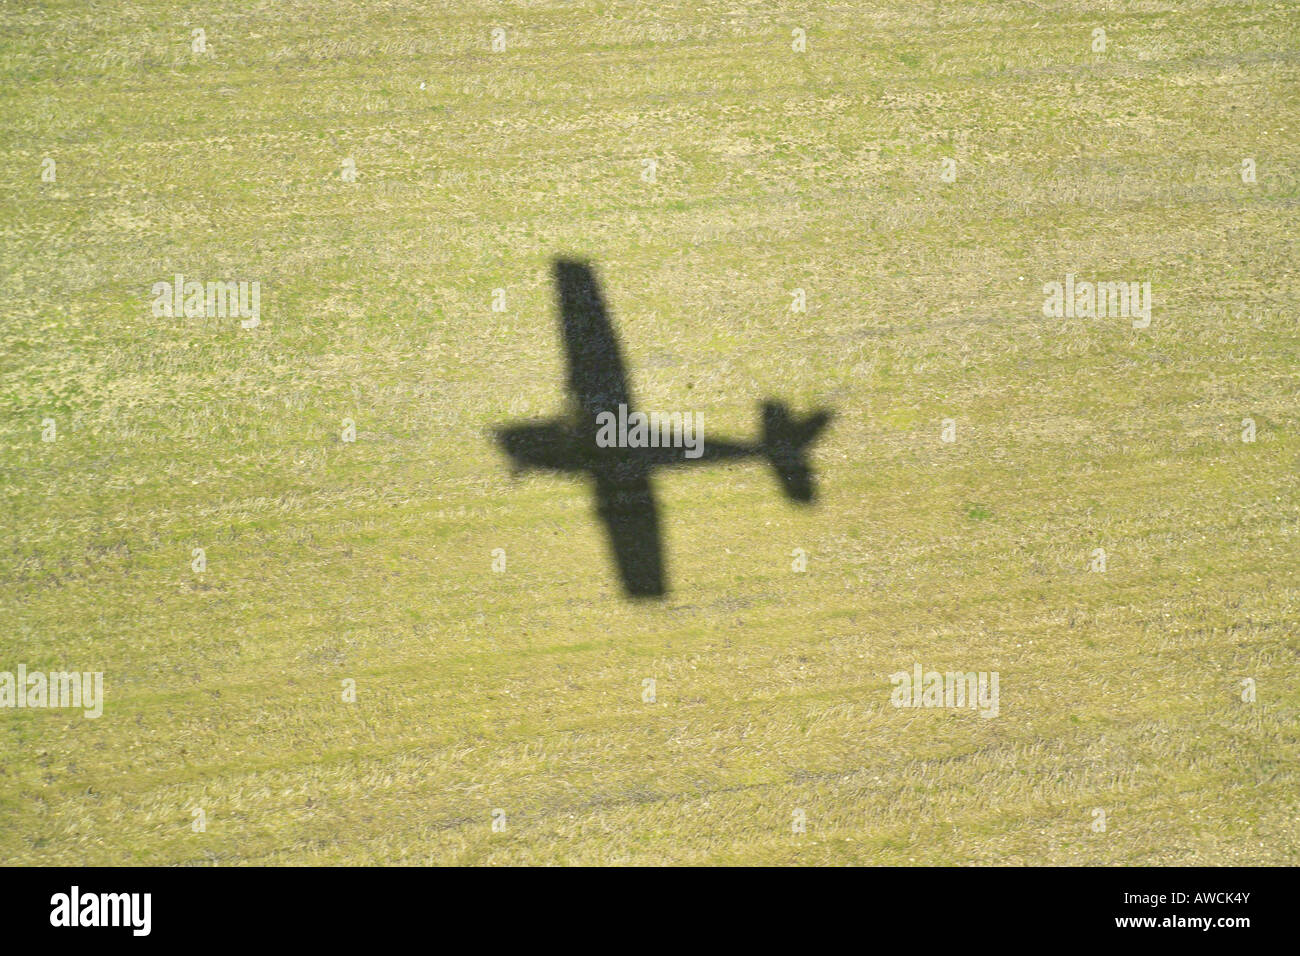 Vista aérea que muestra la sombra arrojada por un avión ligero en un terreno. La sombra fue hecha por un Cessna 172 sobre el despegue Foto de stock